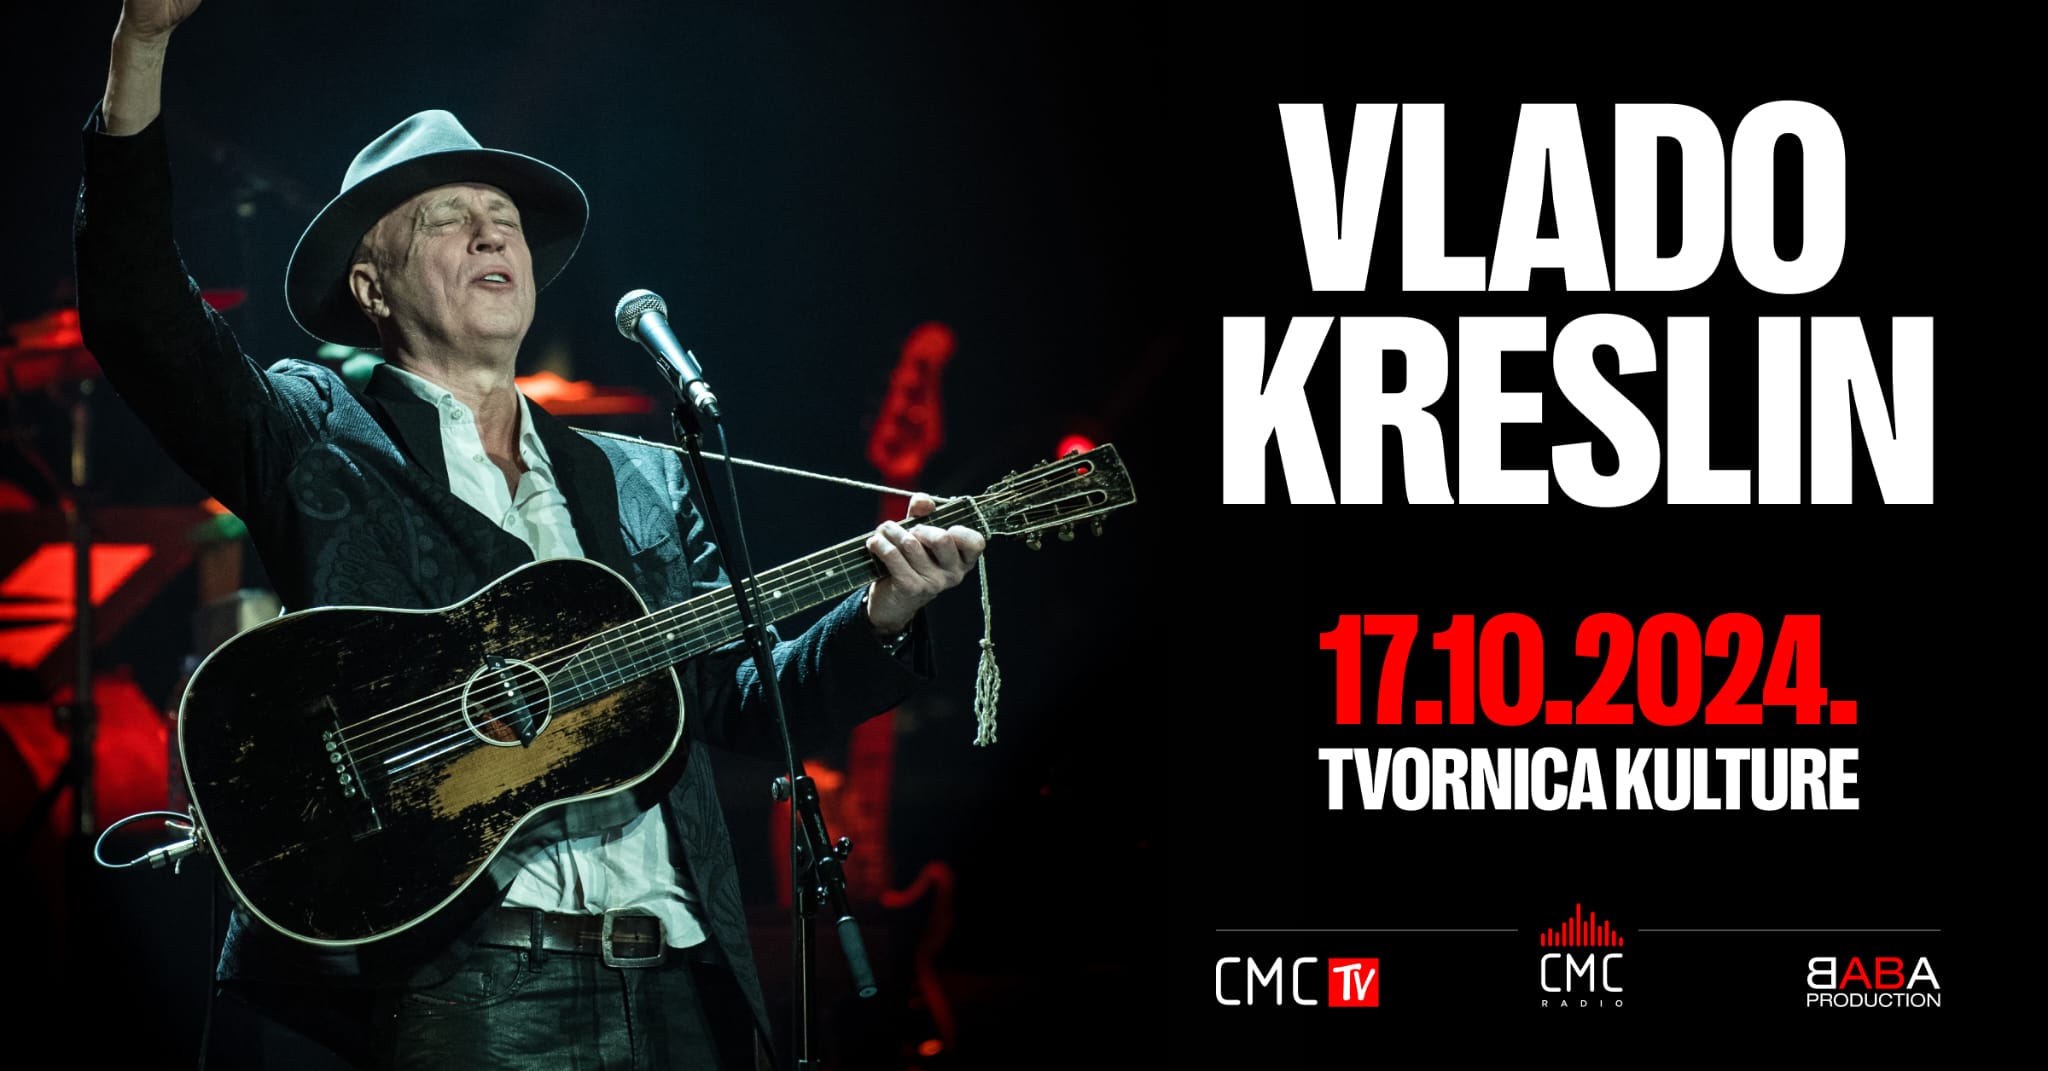 Svjetski poznati trubadur Vlado Kreslin ne miruje ni nakon 70. rođendana – najavio spektakl  u Tvornici Kulture 17. listopada!